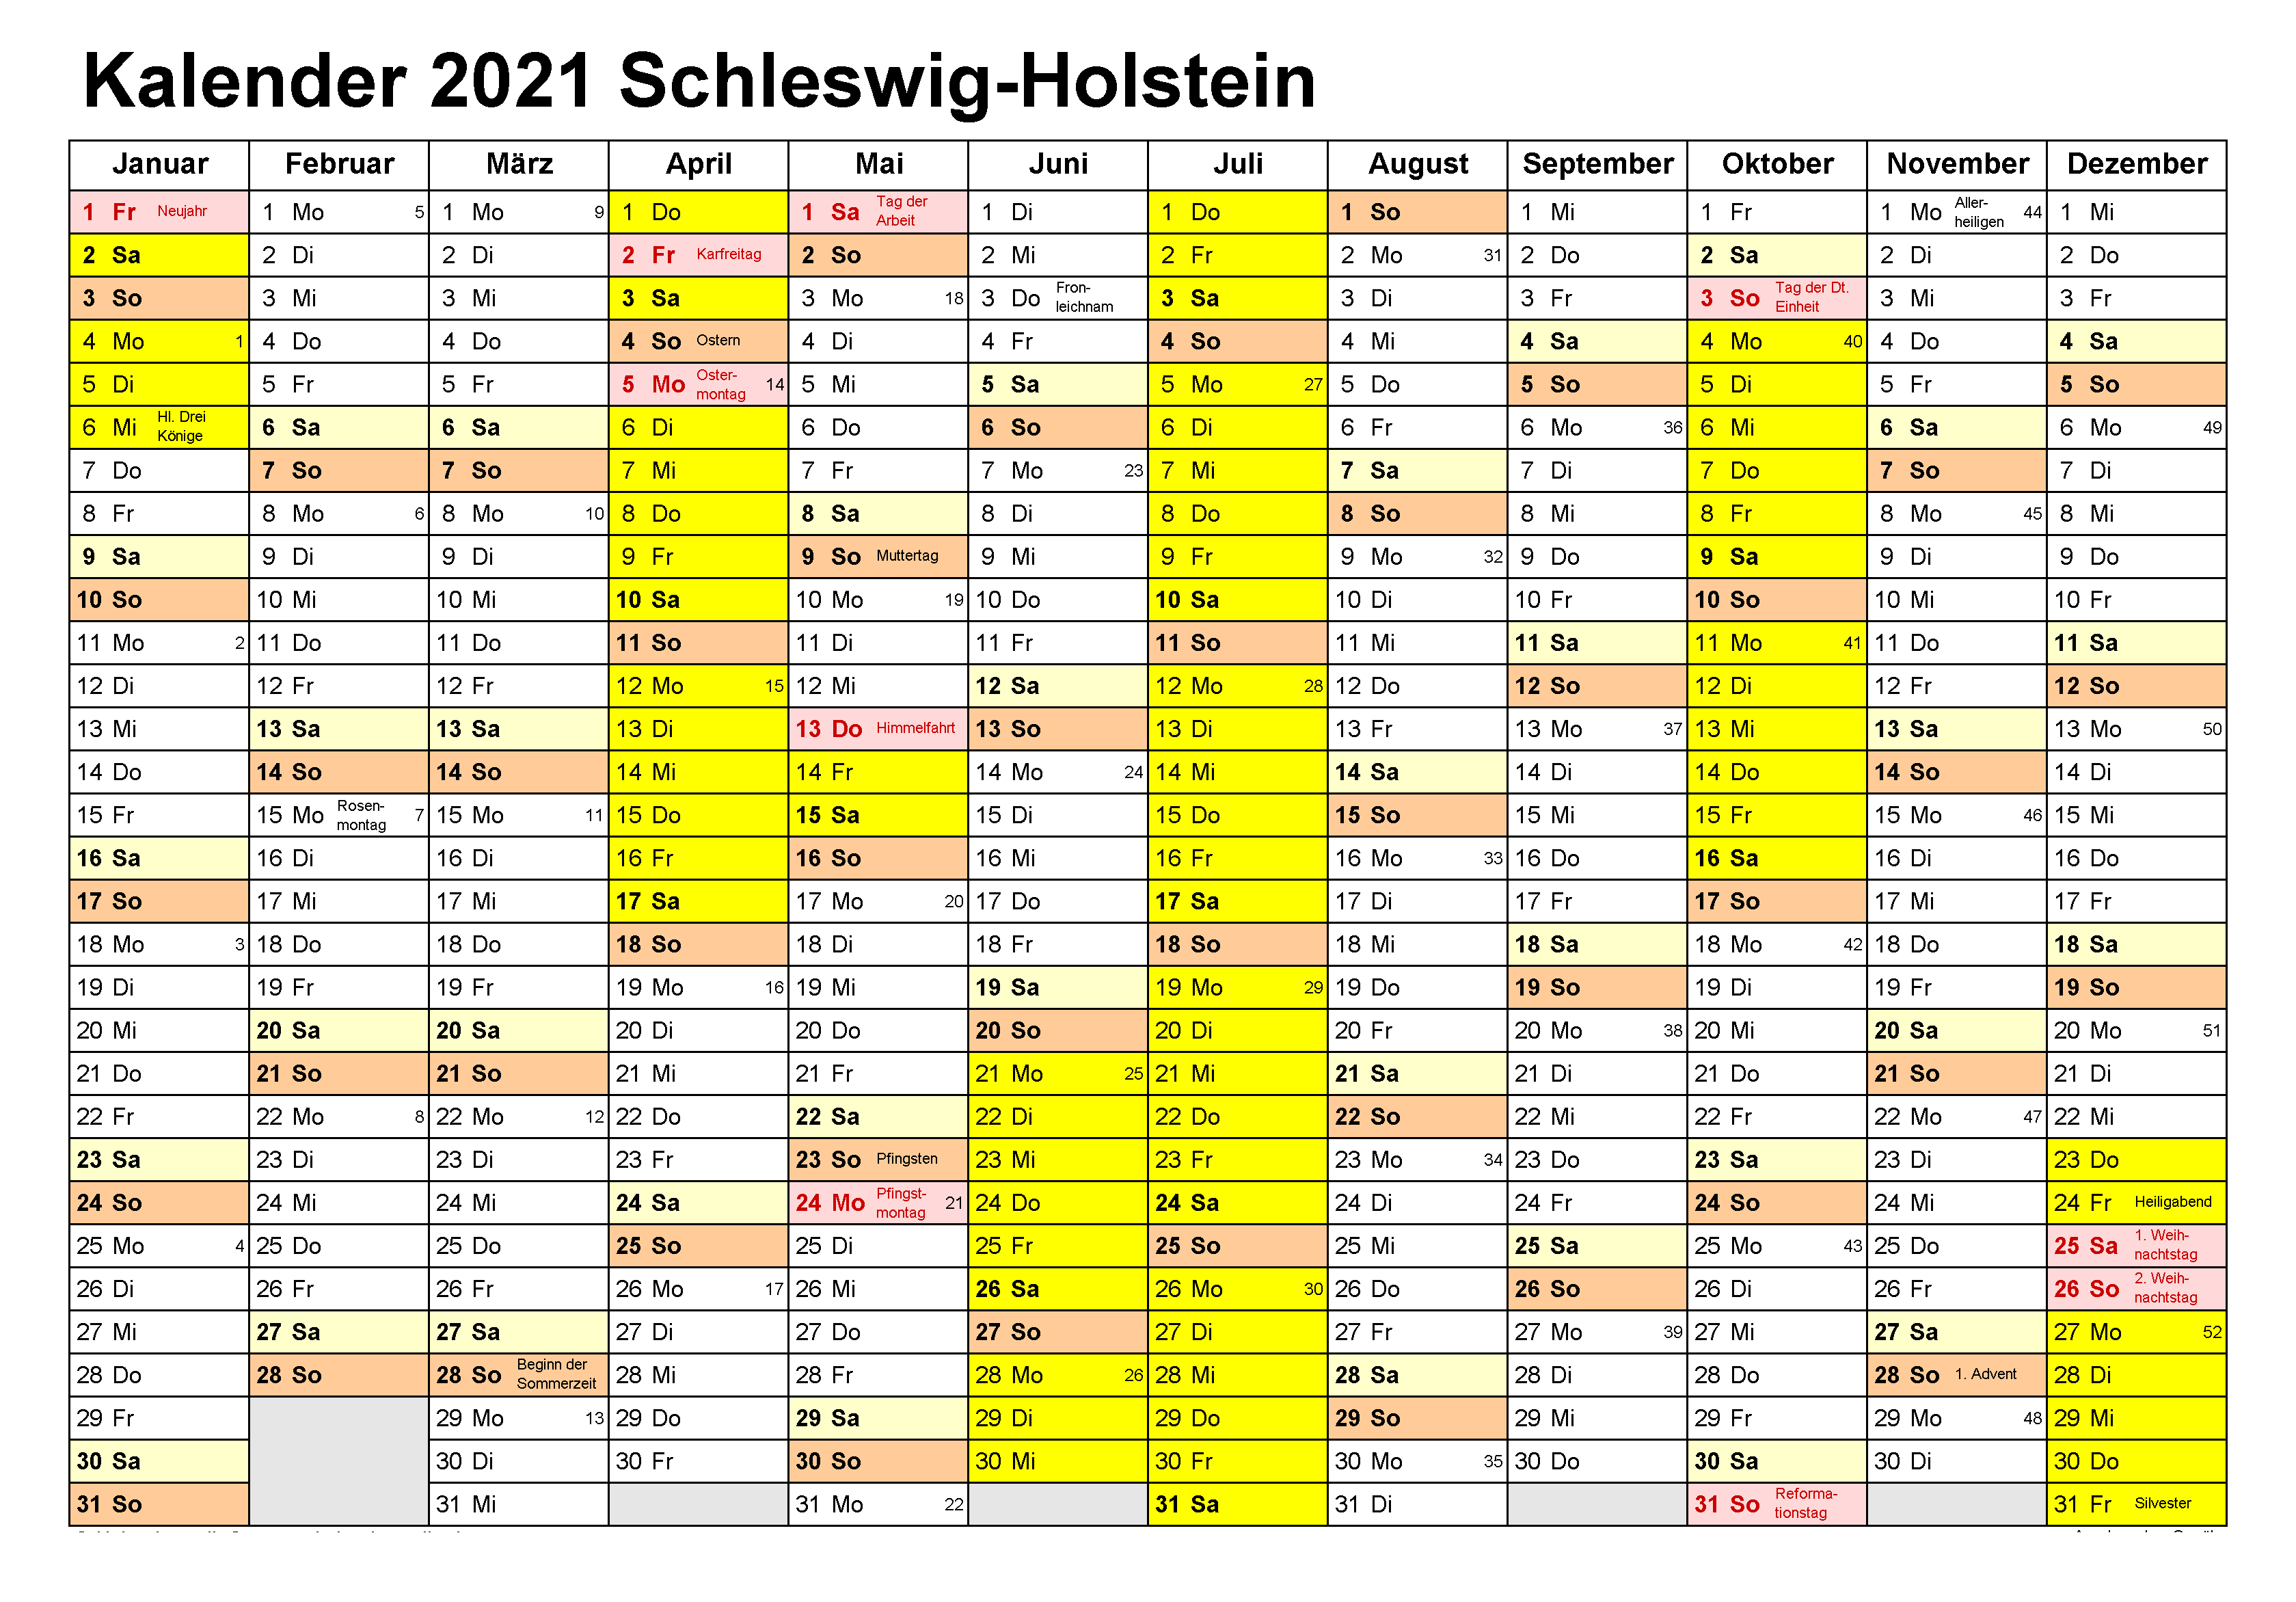 Kalender Schleswig-Holstein 2021 Zum Ausdrucken